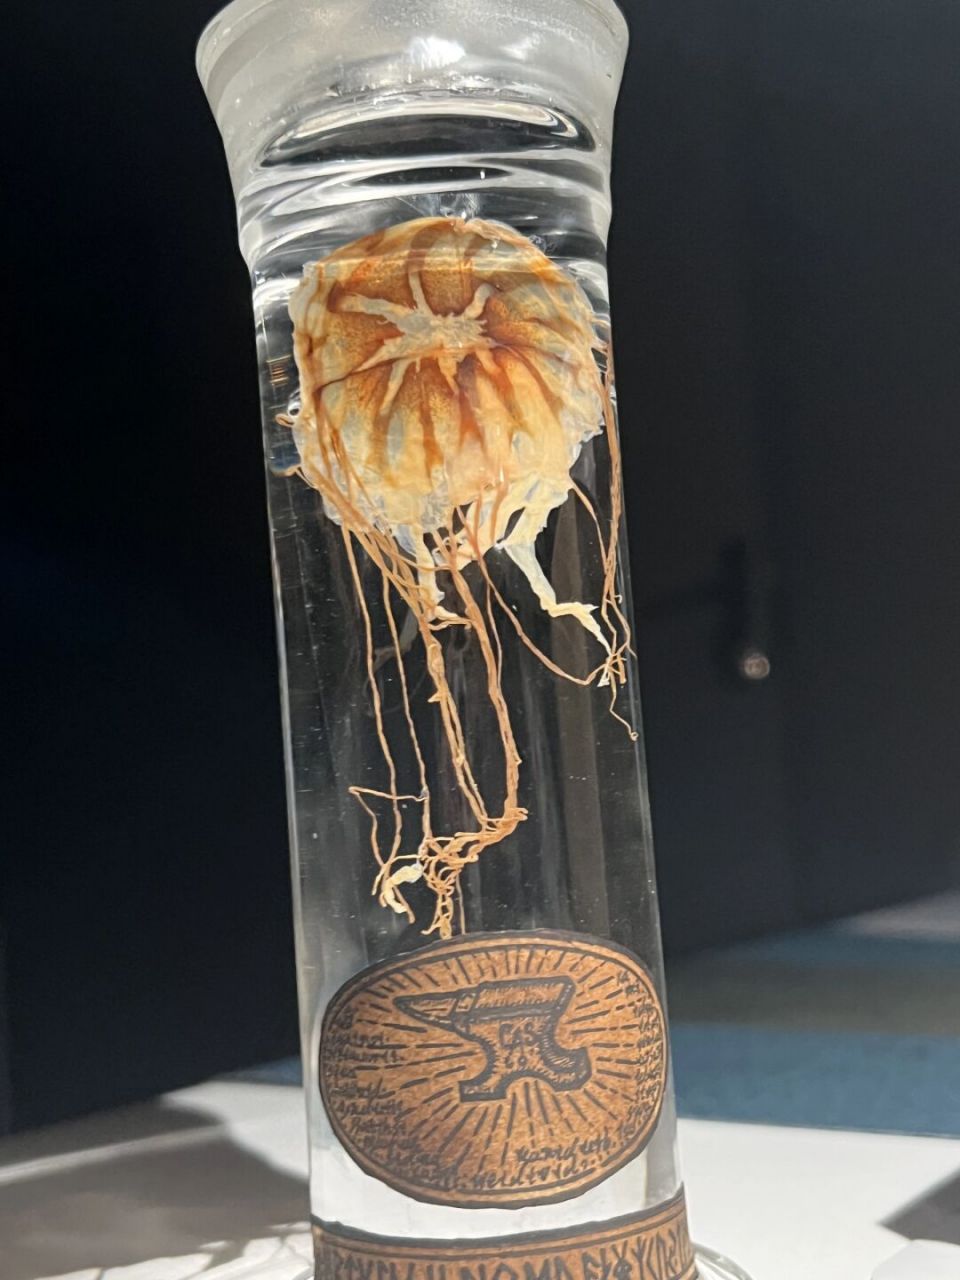 黑星海刺水母介绍图片